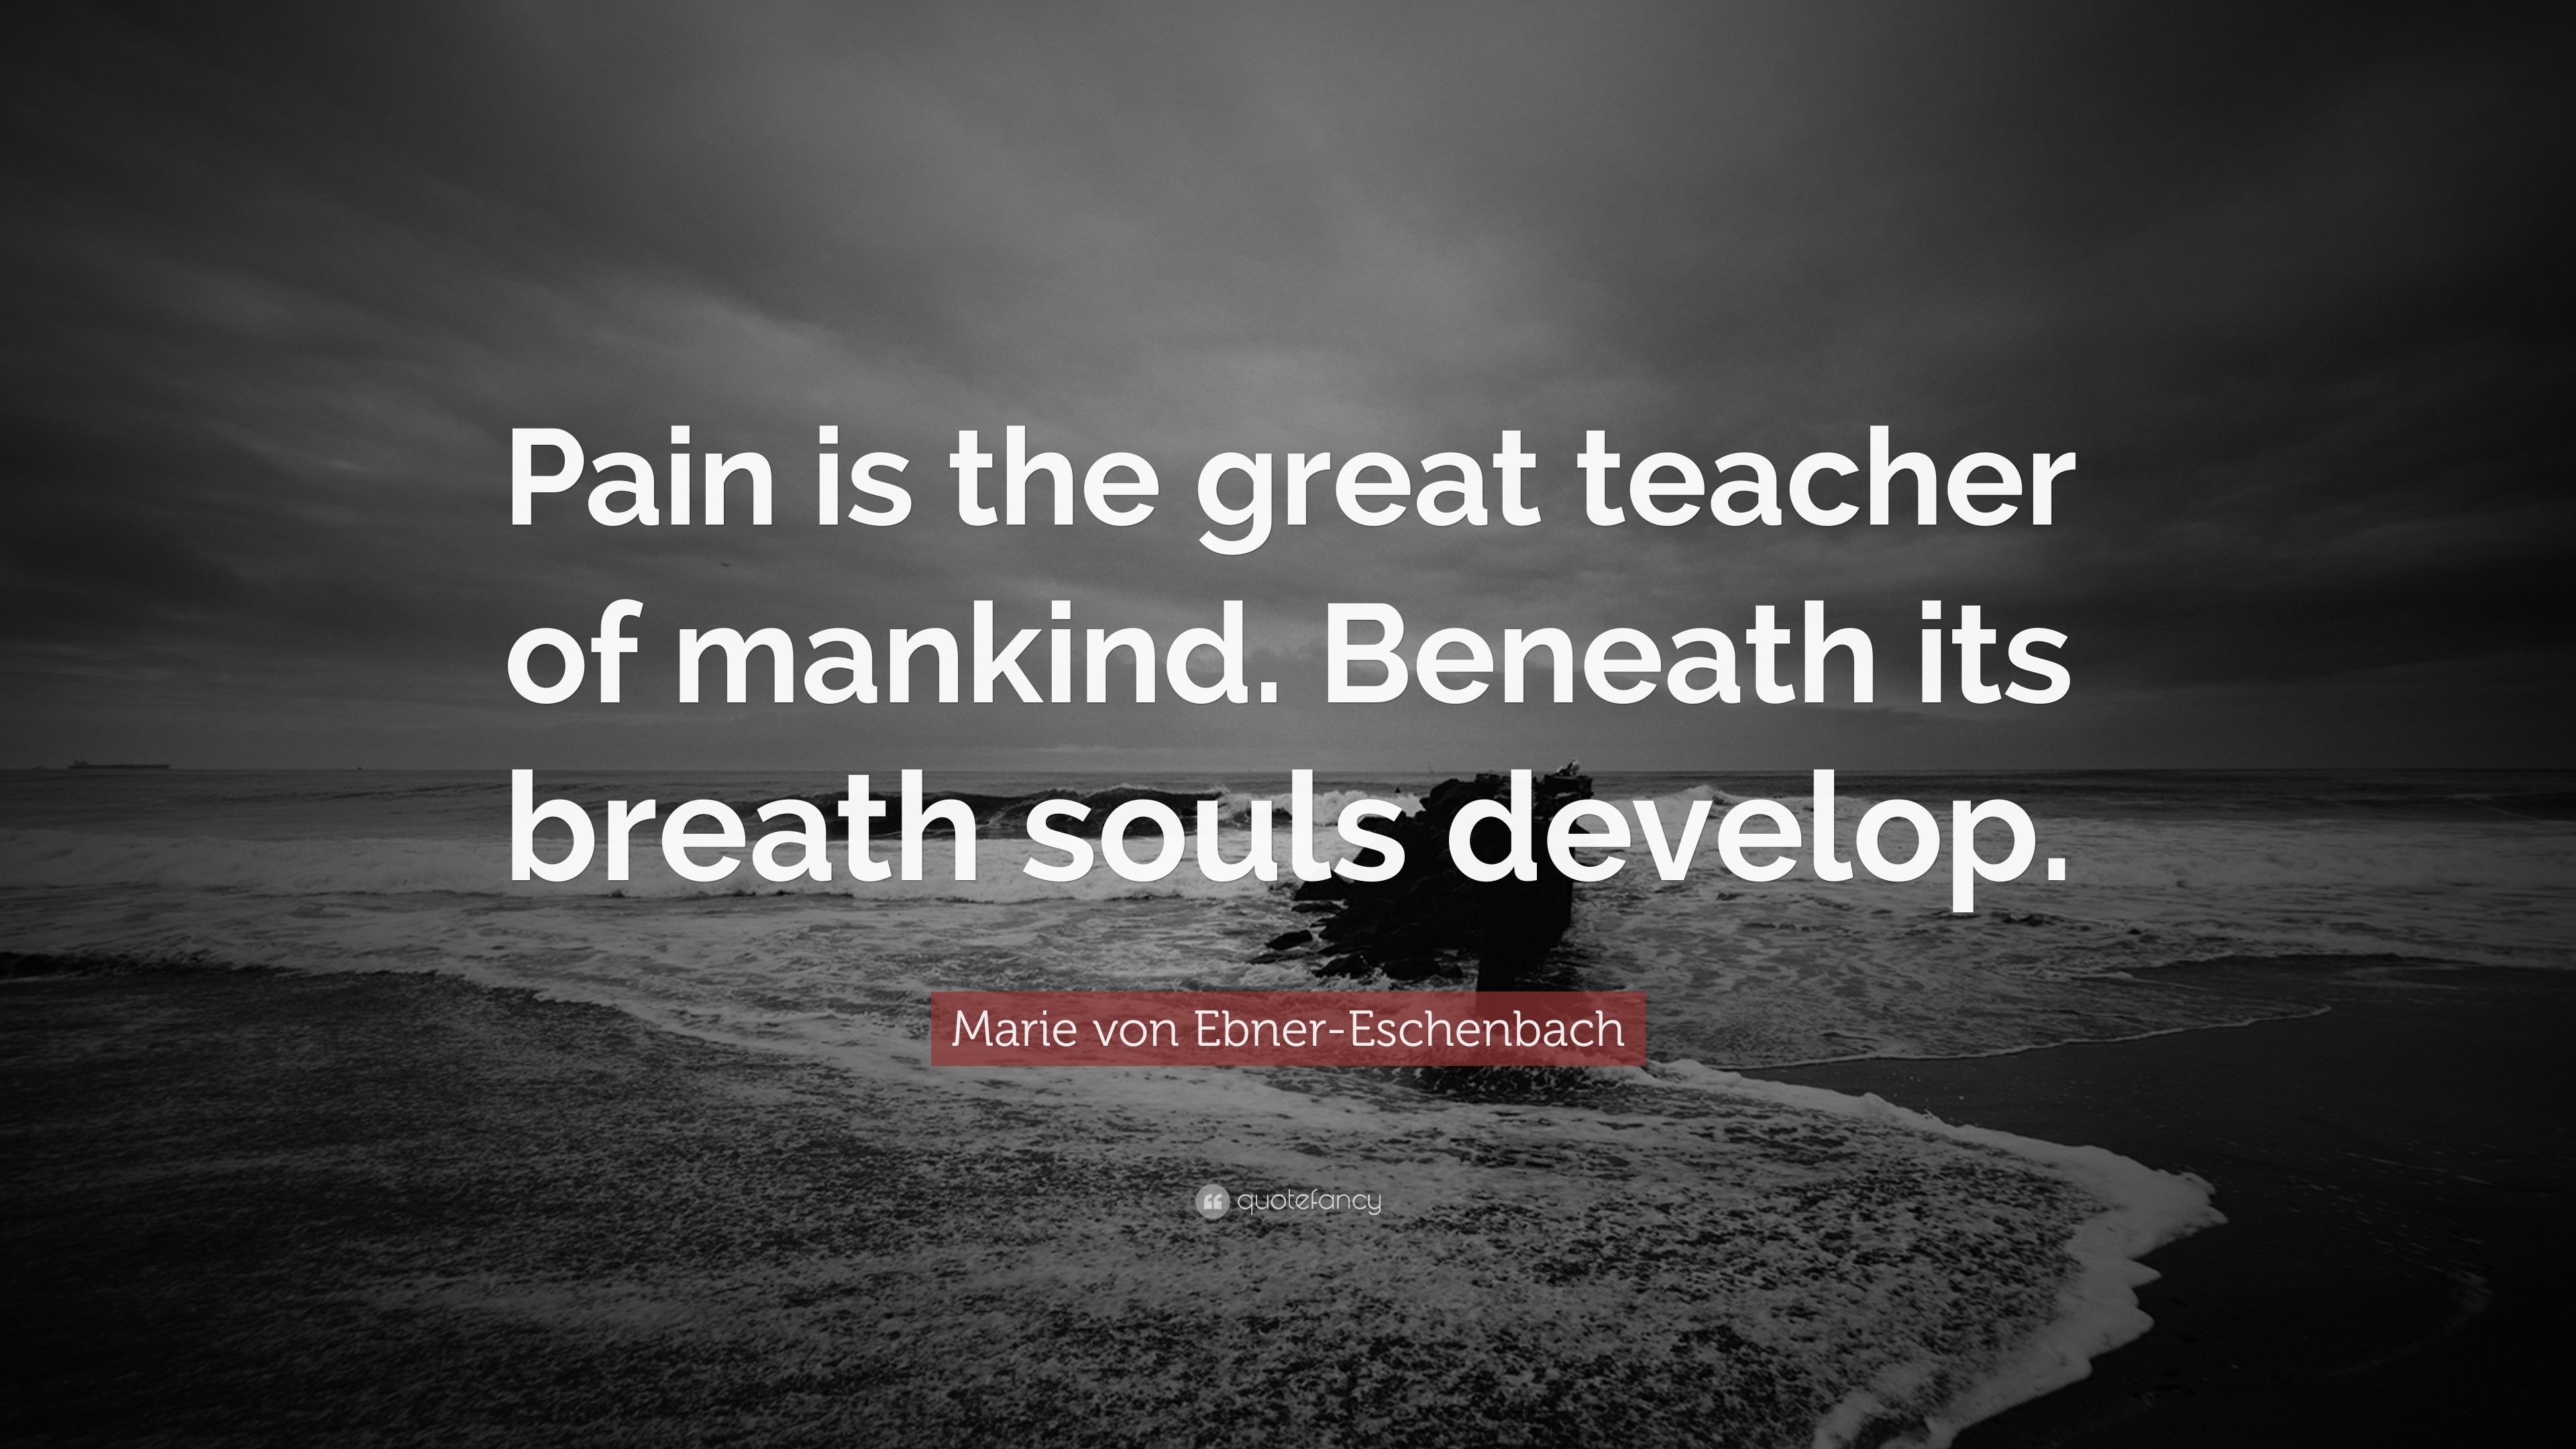 Marie von Ebner-Eschenbach Quote: “Pain is the great teacher of mankind ...